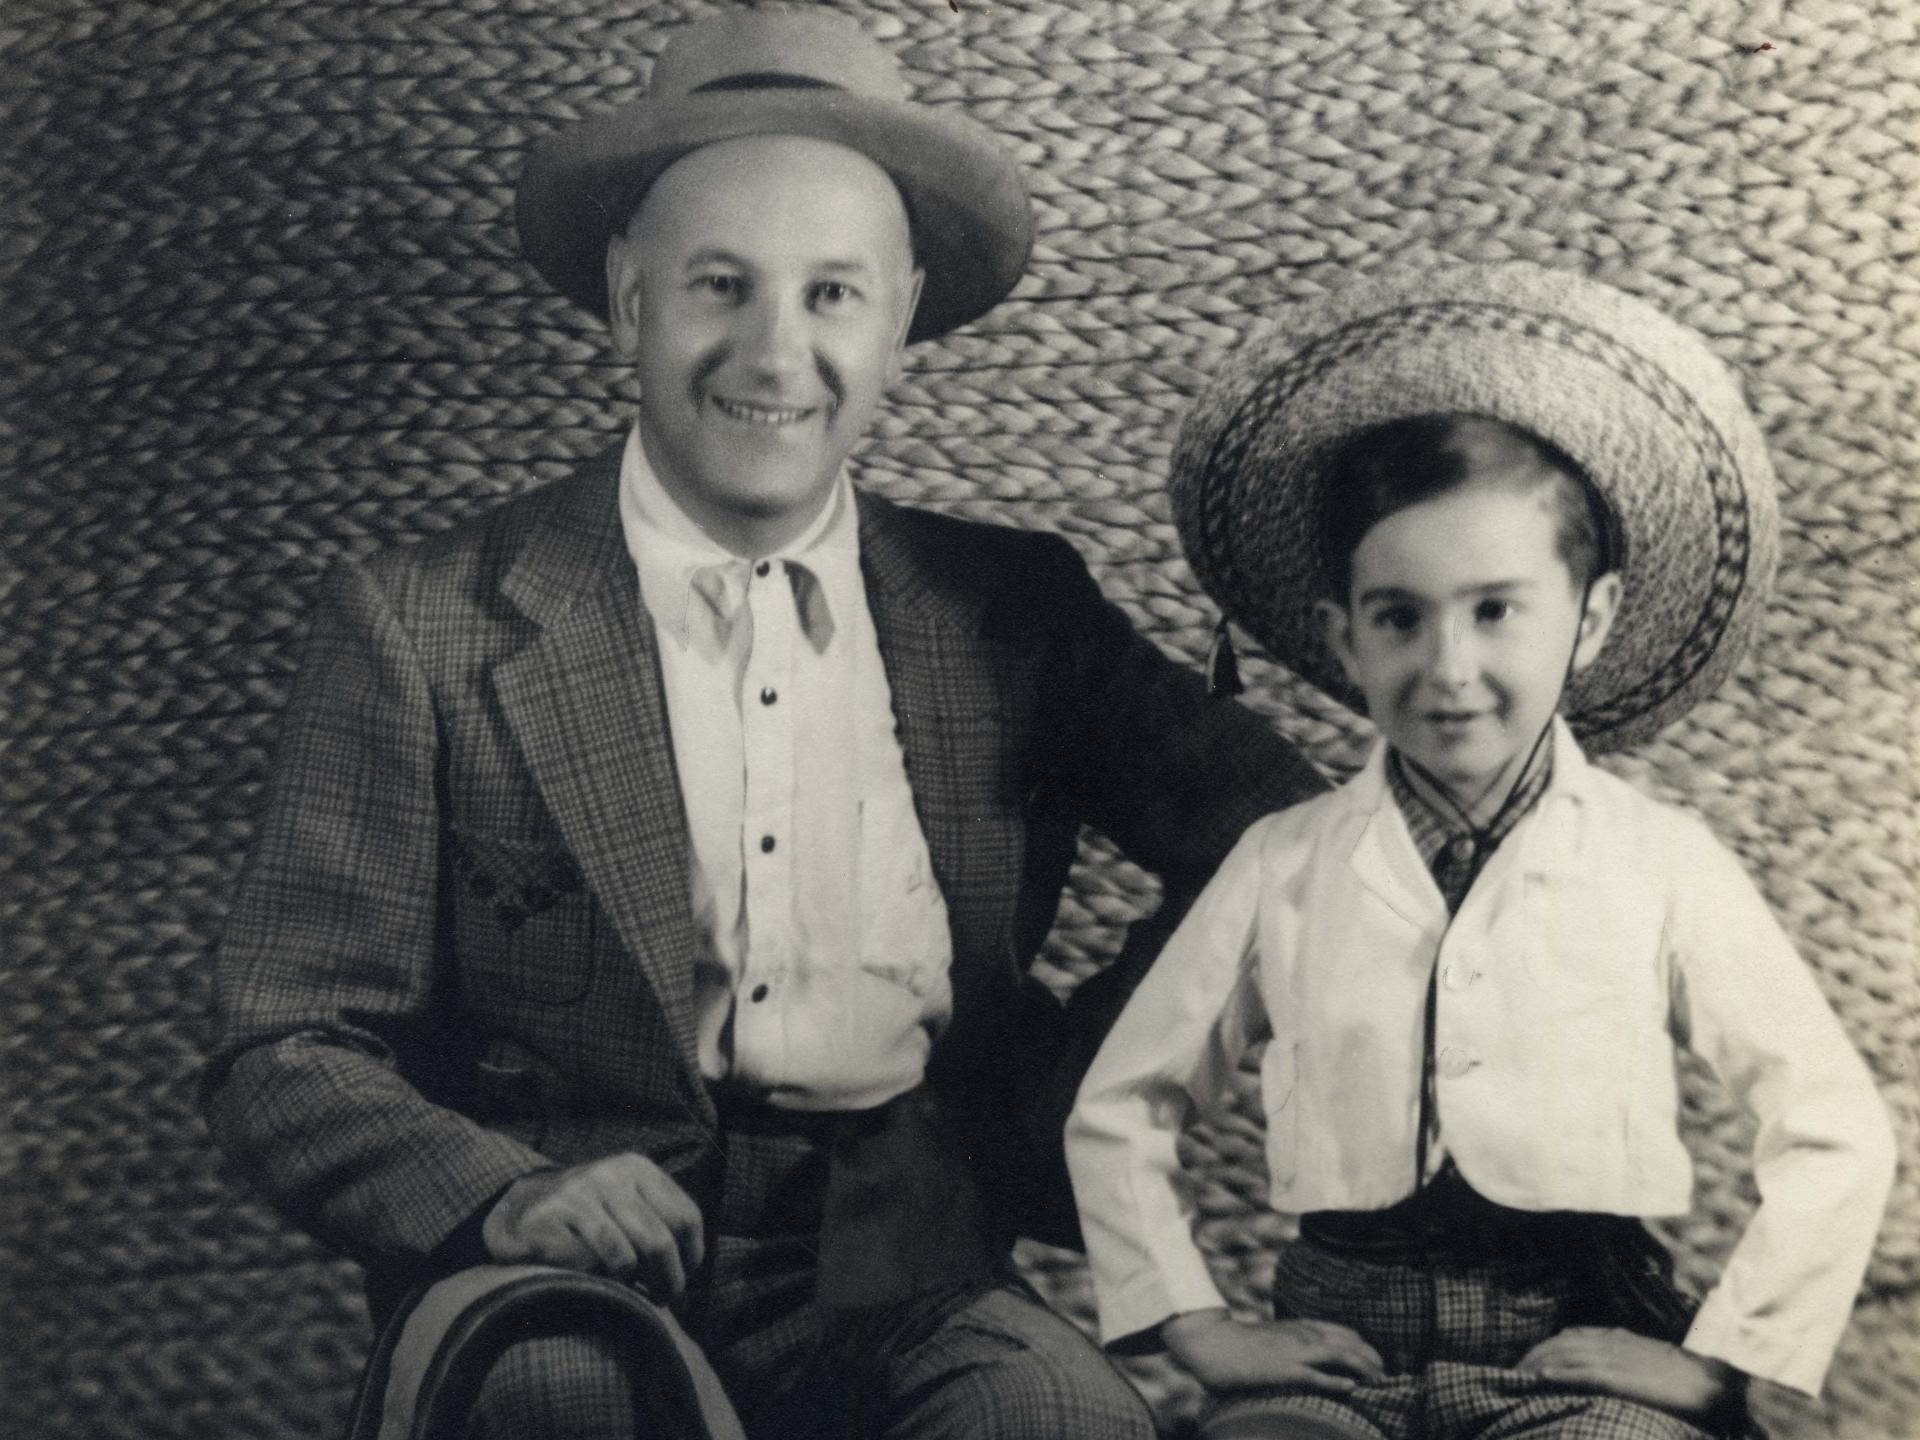 Fotografía en blanco y negro en que aparece padre e hijo vestidos con traje de huaso.